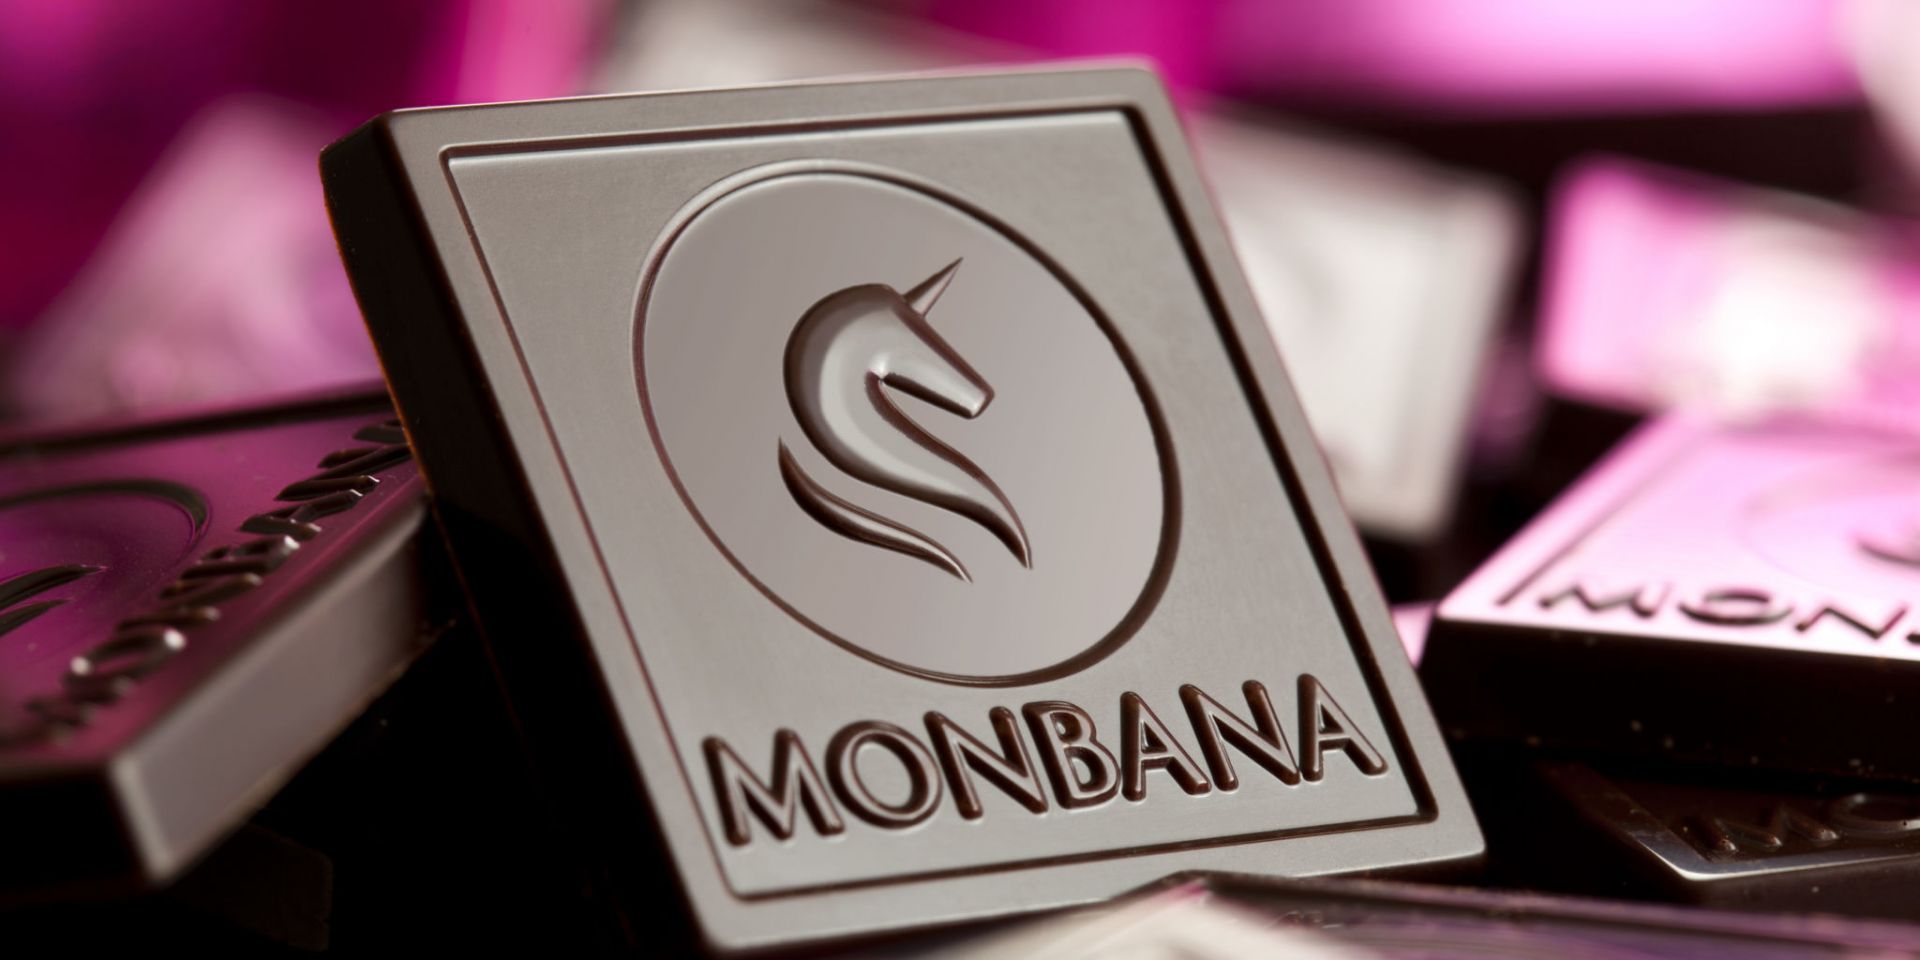 Dosette individuelle de chocolat lacté Monbana x 50